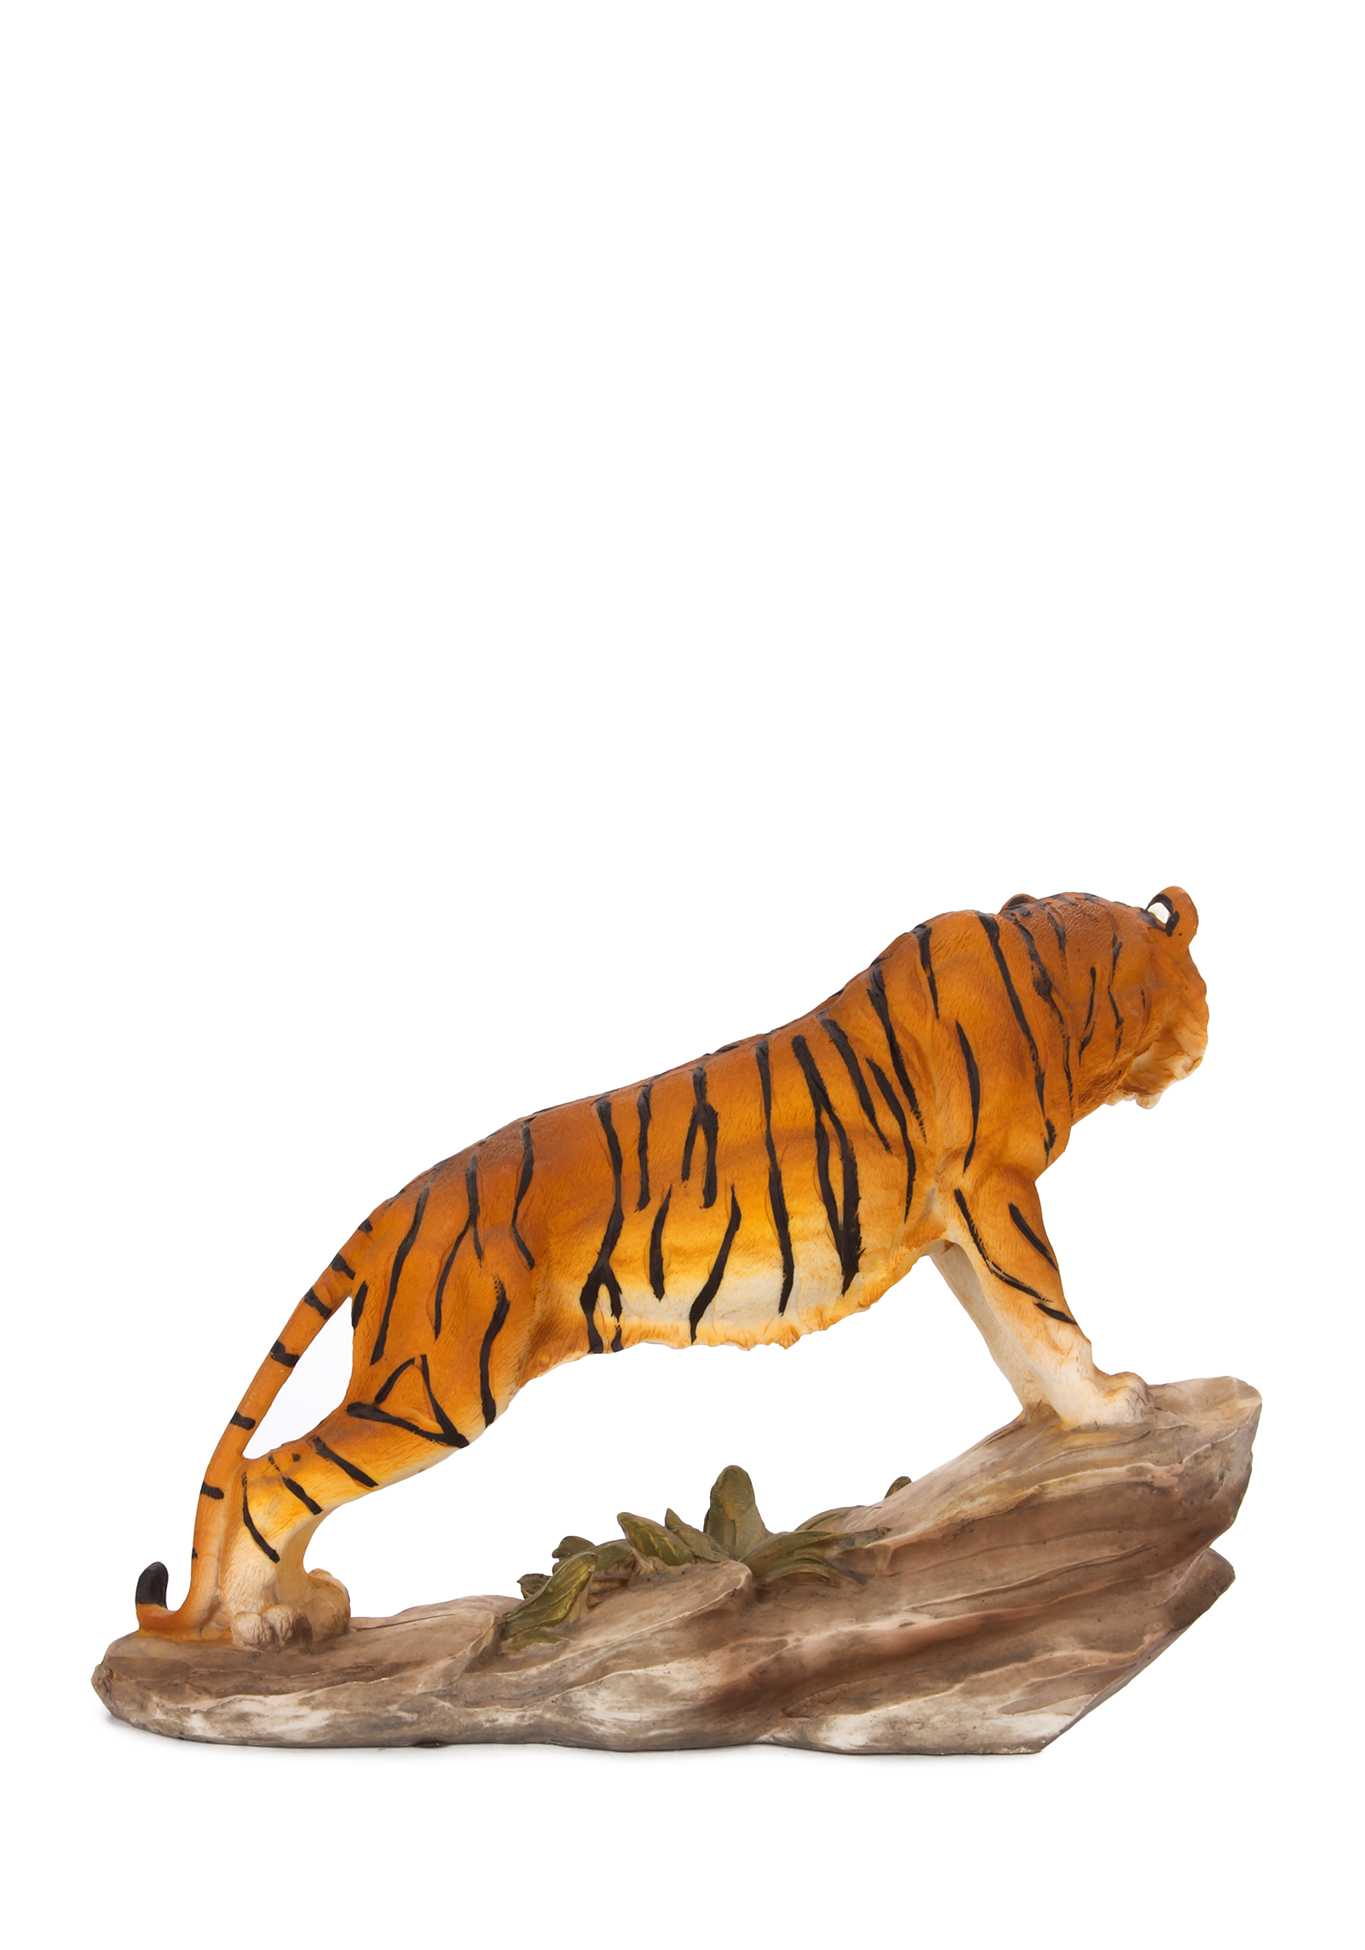 Оберег интерьерный "Тигр" Lefard, цвет стойка бенгальского тигра, размер 20,5*7*15 см - фото 2